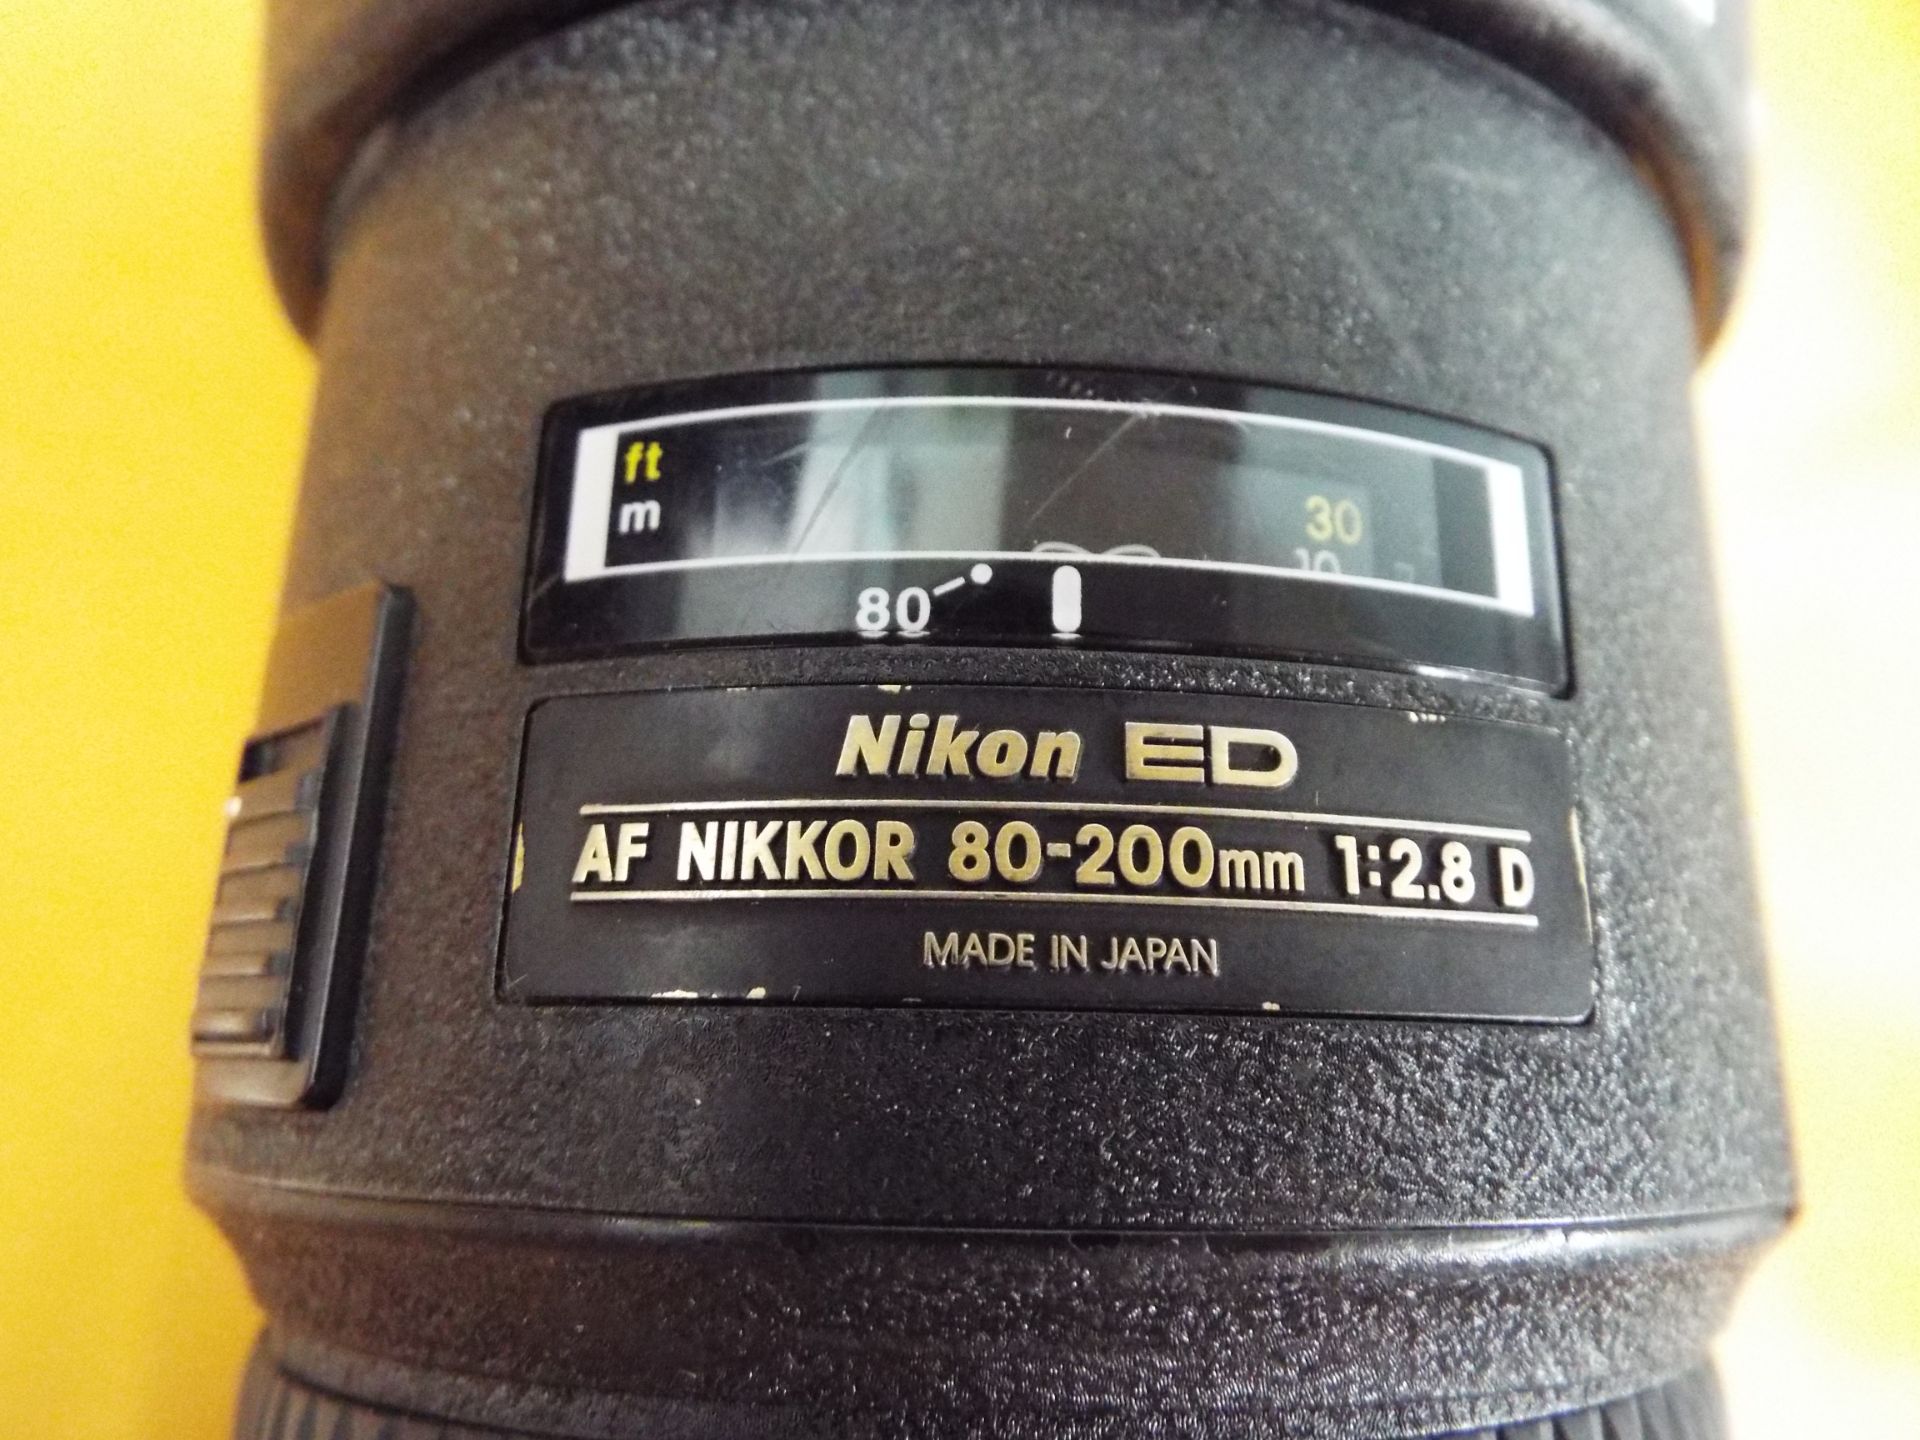 Nikon ED AF Nikkor 80-200mm 1:2.8 D Lense with Leather Carry Case - Bild 3 aus 7